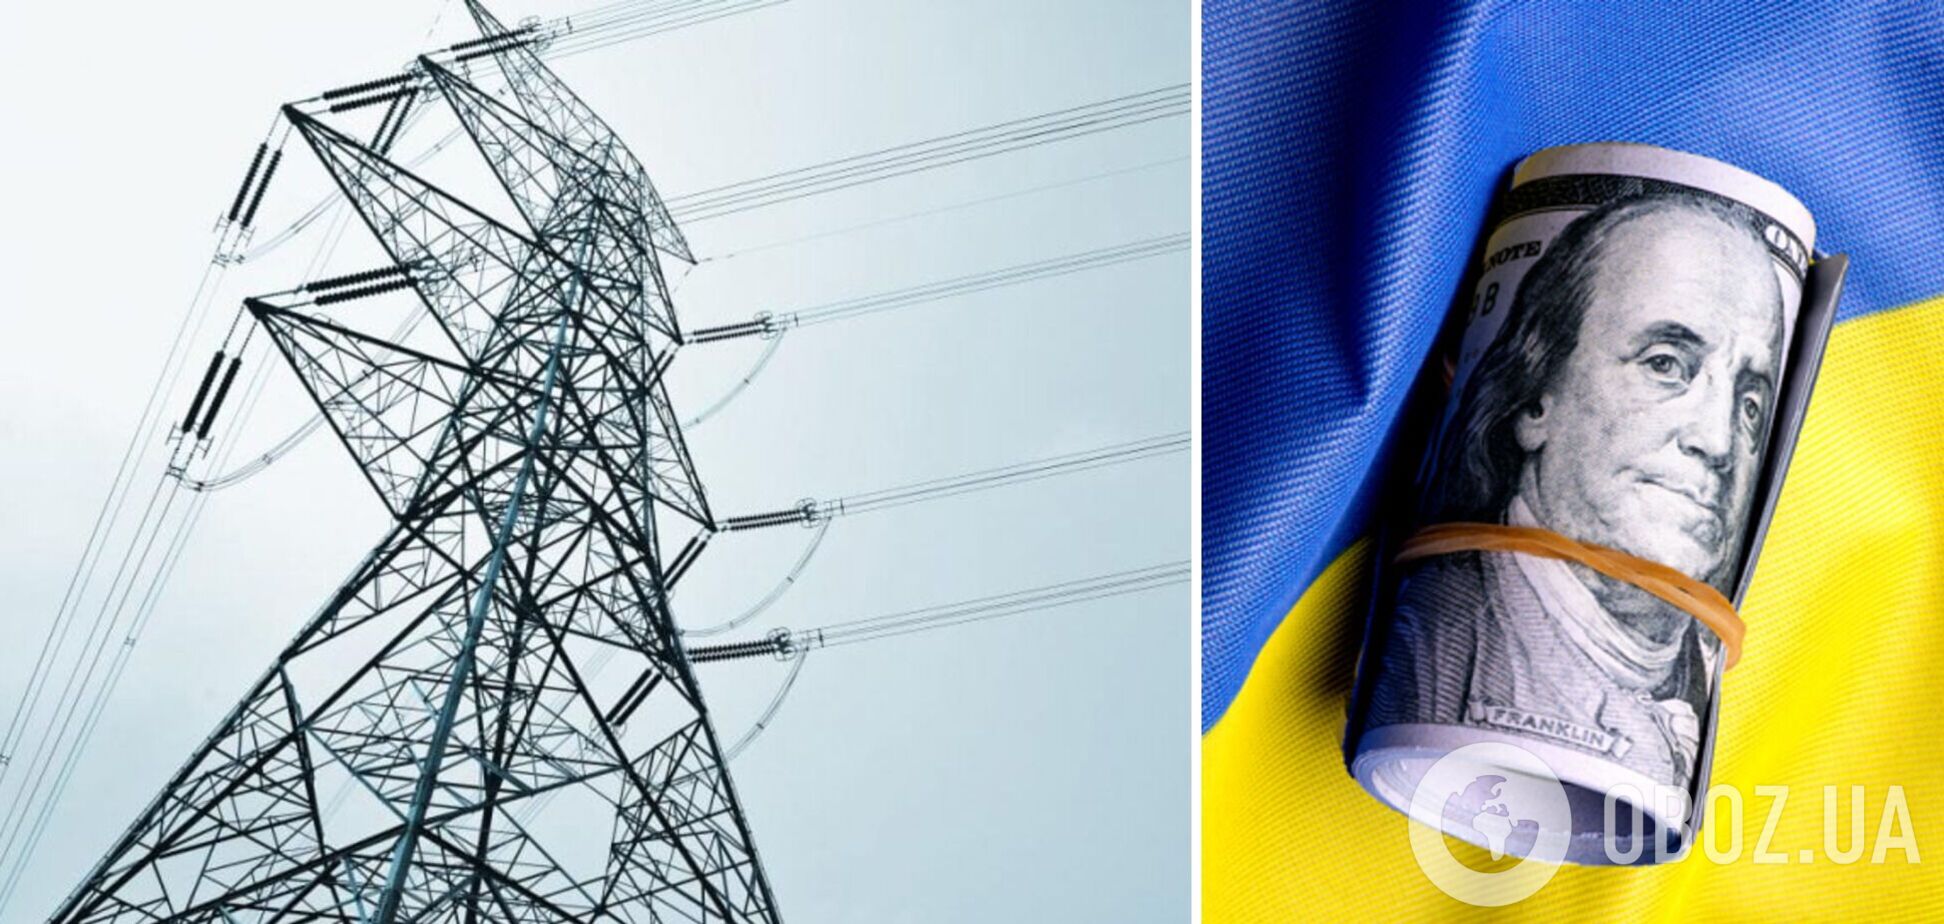 Енергетика України потребує термінового вирішення боргової кризи, – Конеченков